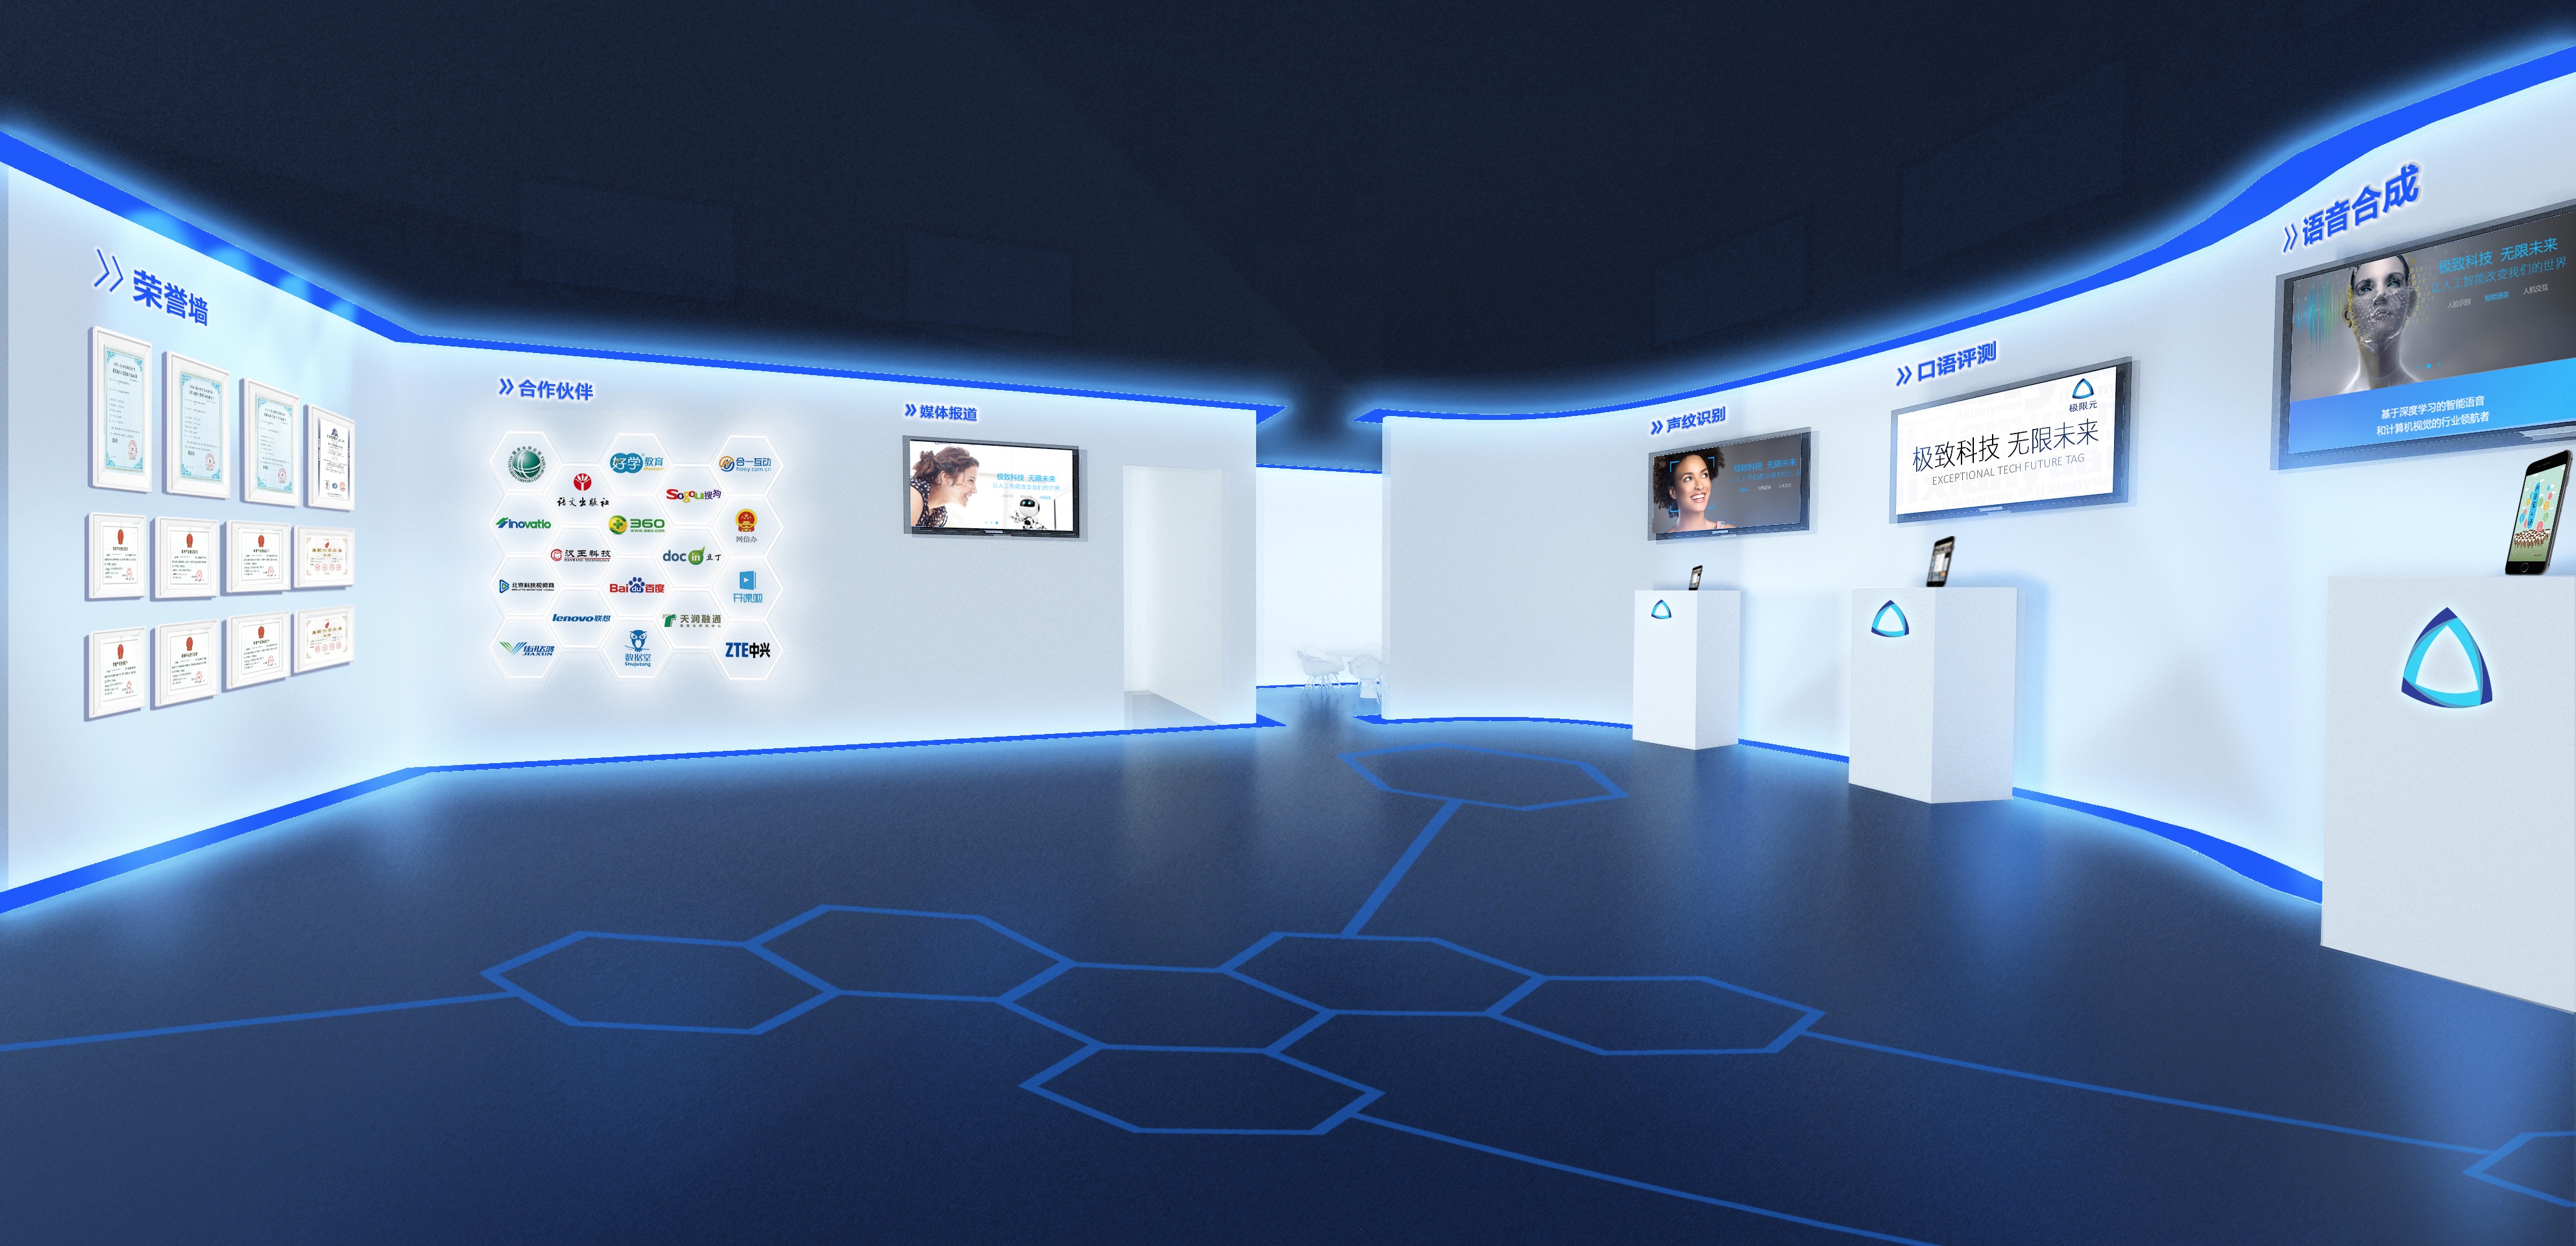 这是一张现代化的虚拟展览厅图片，内有多个展示屏幕，蓝色调设计，未来感强，地面带有六边形图案。